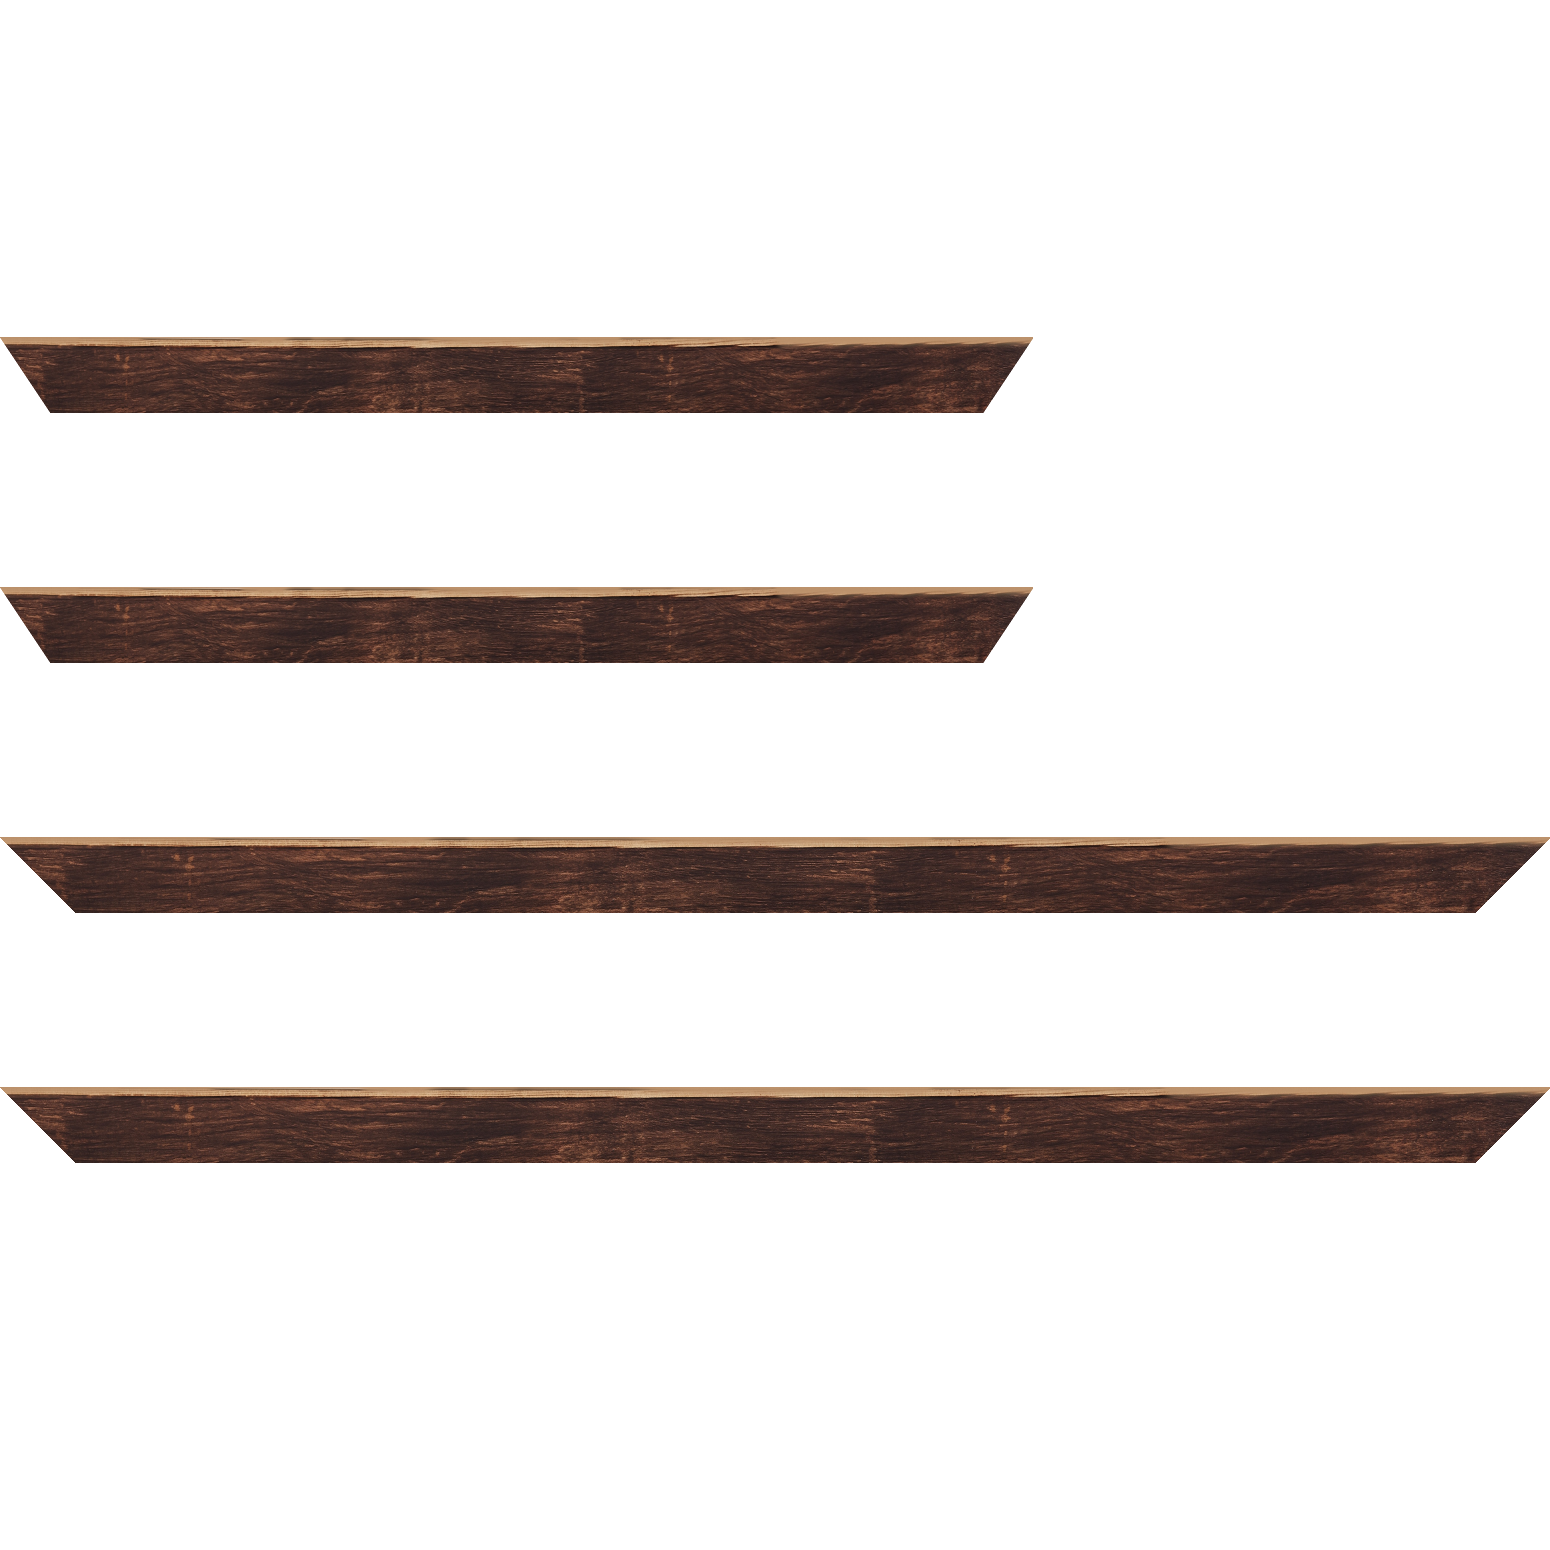 Baguette bois profil arrondi en pente plongeant largeur 2.4cm couleur marron effet ressuyé, angle du cadre extérieur filet naturel - 92x60